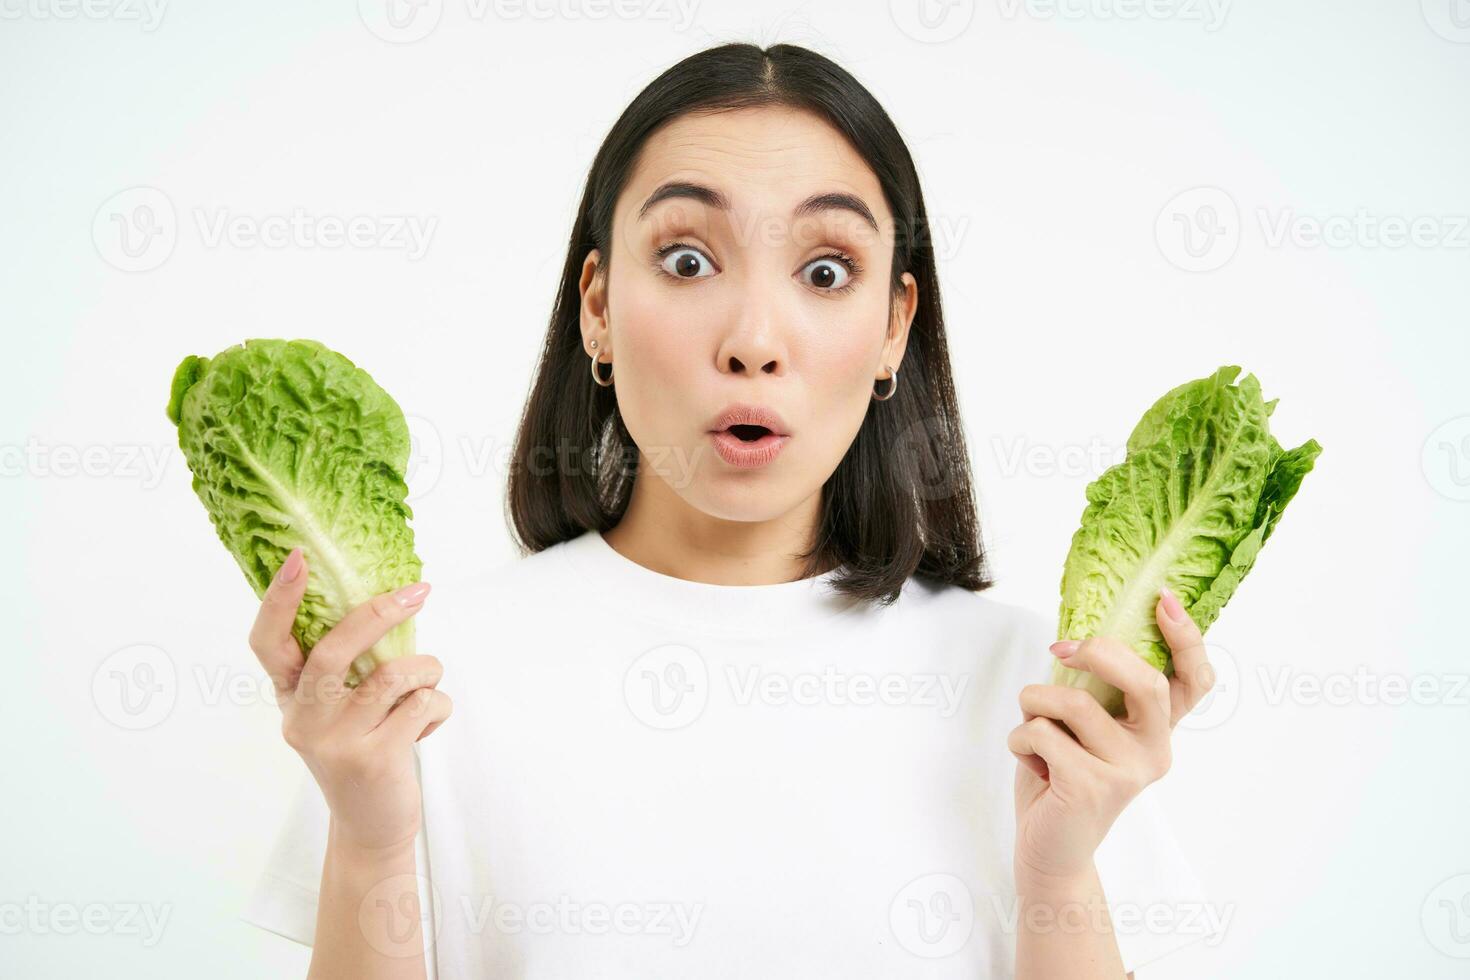 portret van vrouw met verrast gezicht, Holding kool, sla bladeren en looks versteld staan, groeit groenten in eigen tuin, wit achtergrond foto